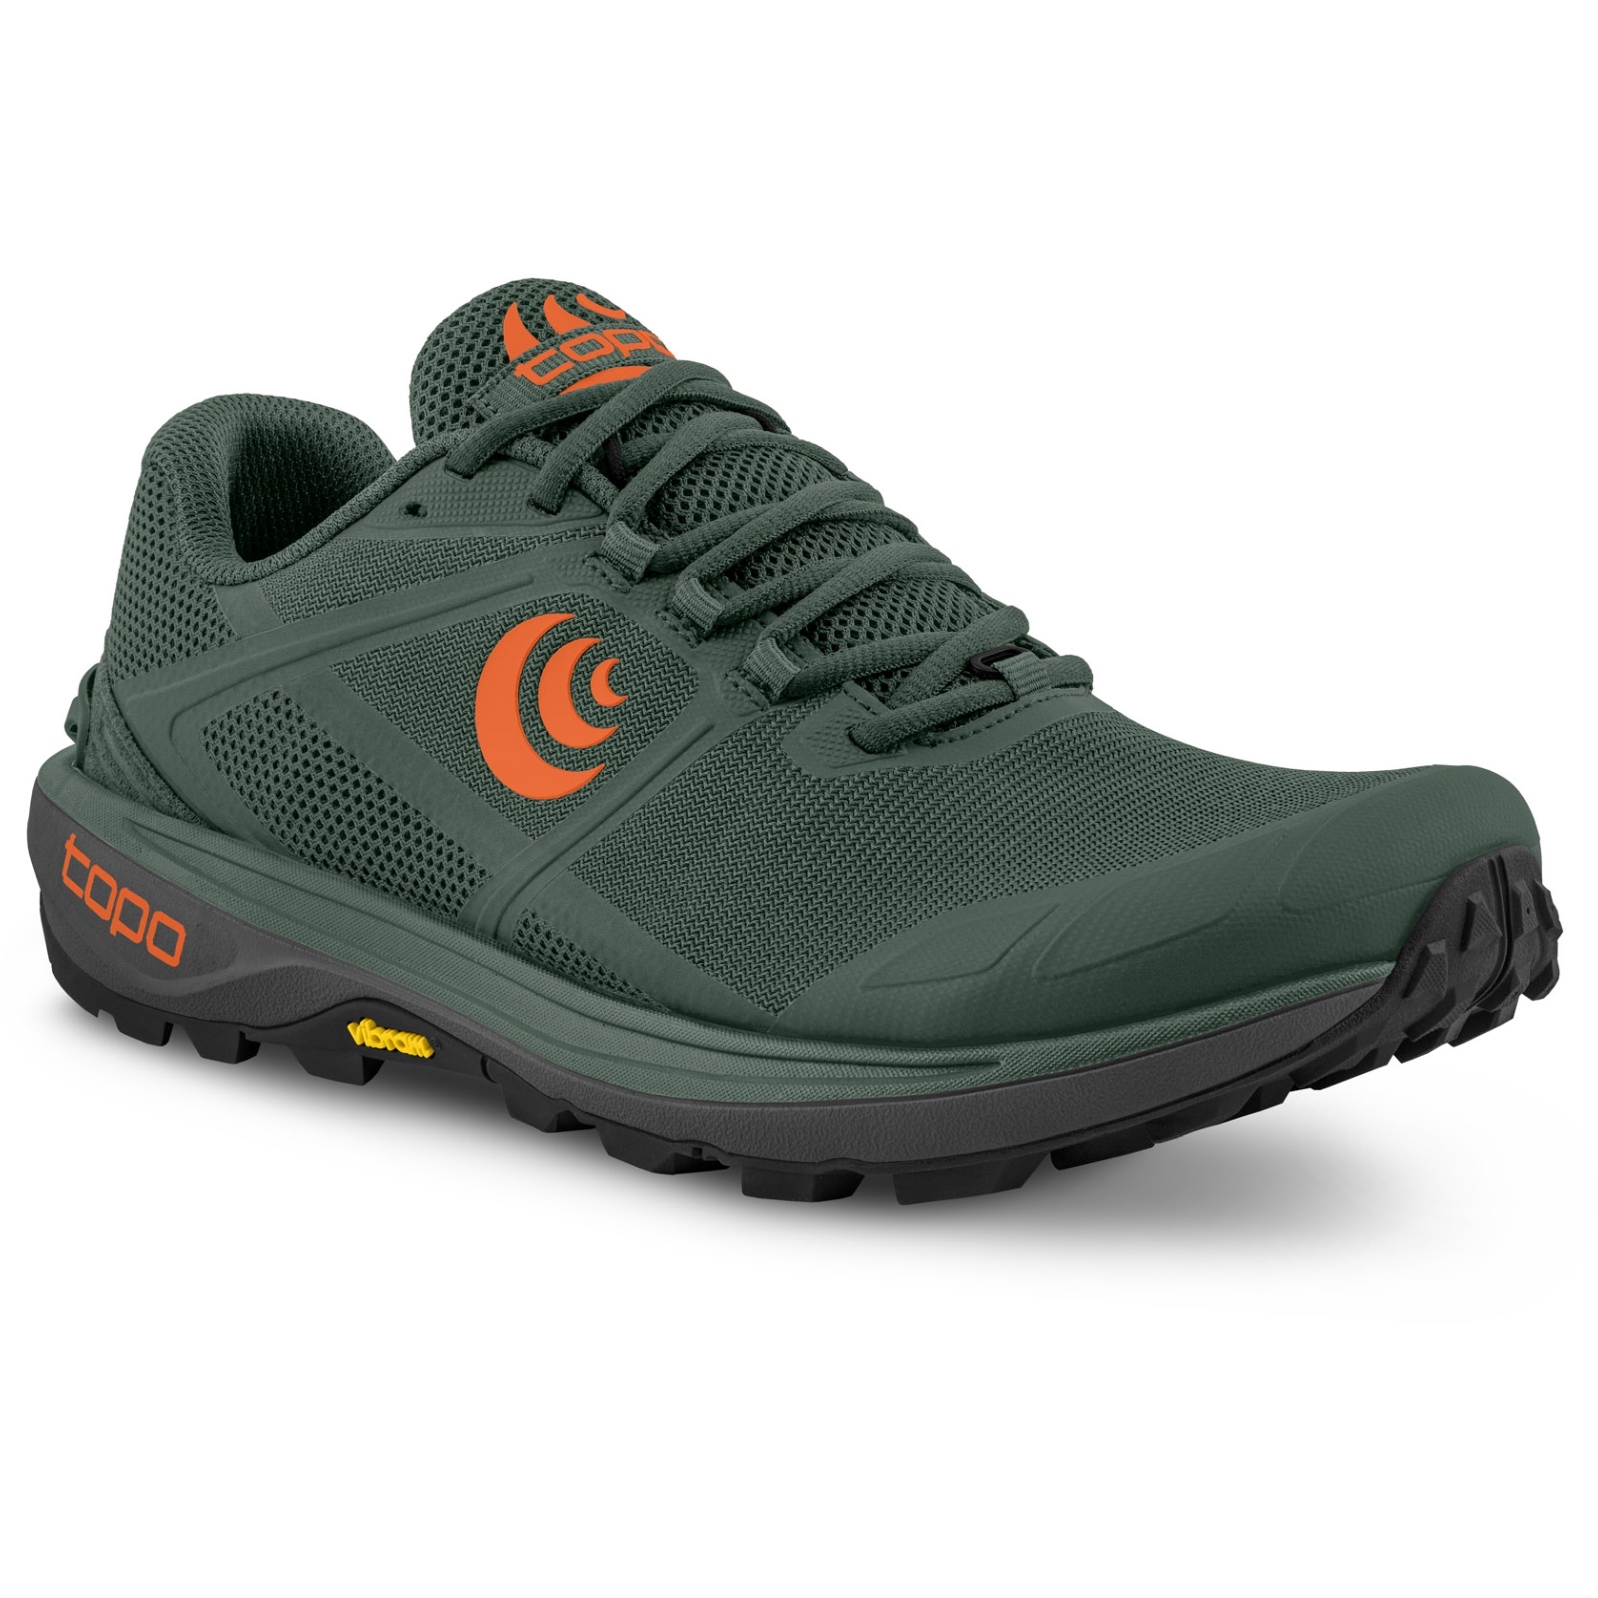 Productfoto van Topo Athletic Terraventure 4 Trailrunning Schoenen Heren - groen/oranje